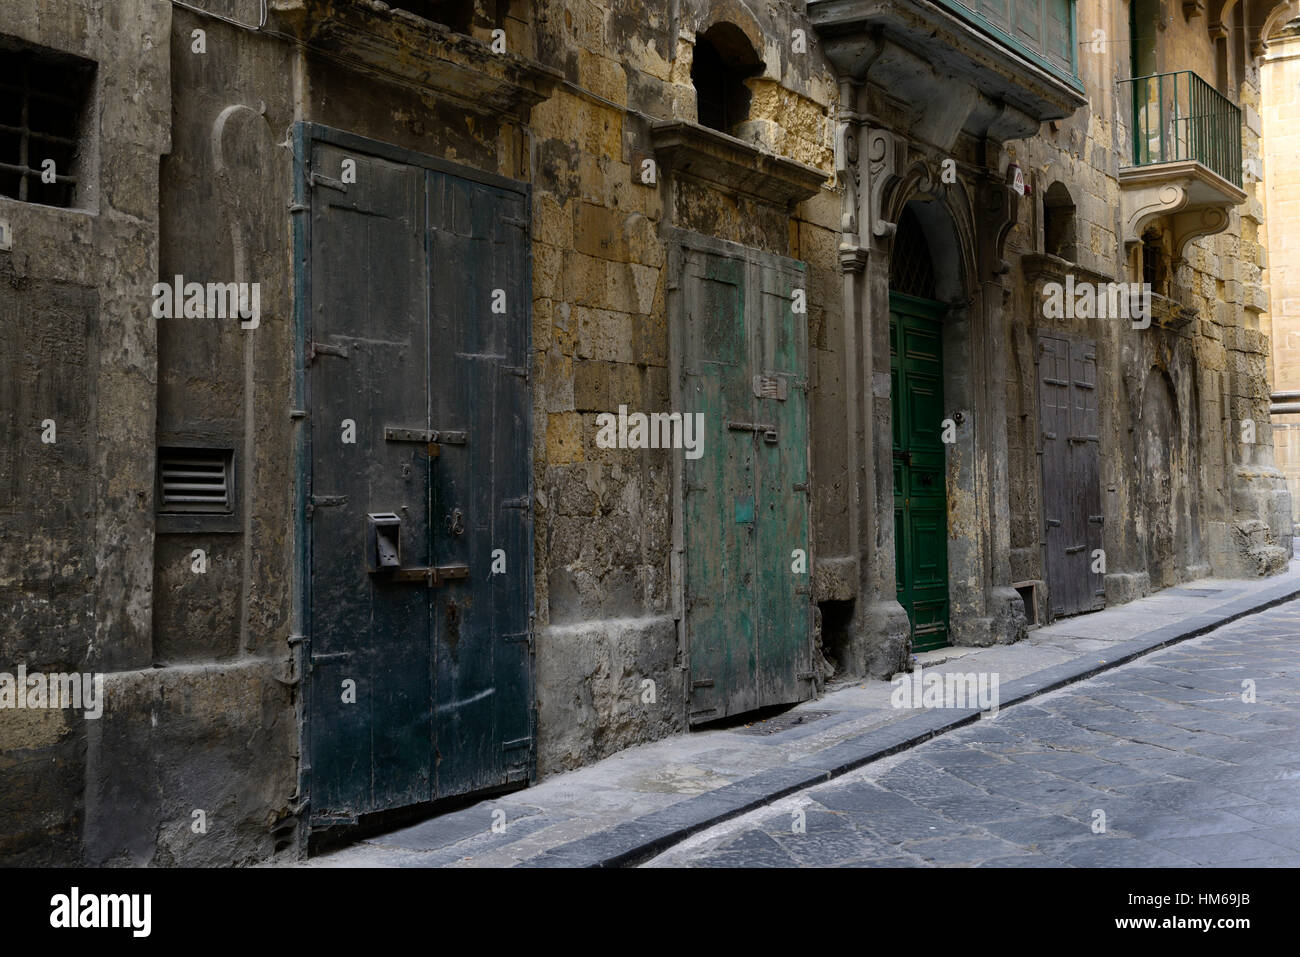 Alte Tür Tür baufällig heruntergekommen, ungepflegt altersschwachen Valletta Malta traditionelle Attraktion aufgegeben Seite Straßen Straße Holz Stockfoto